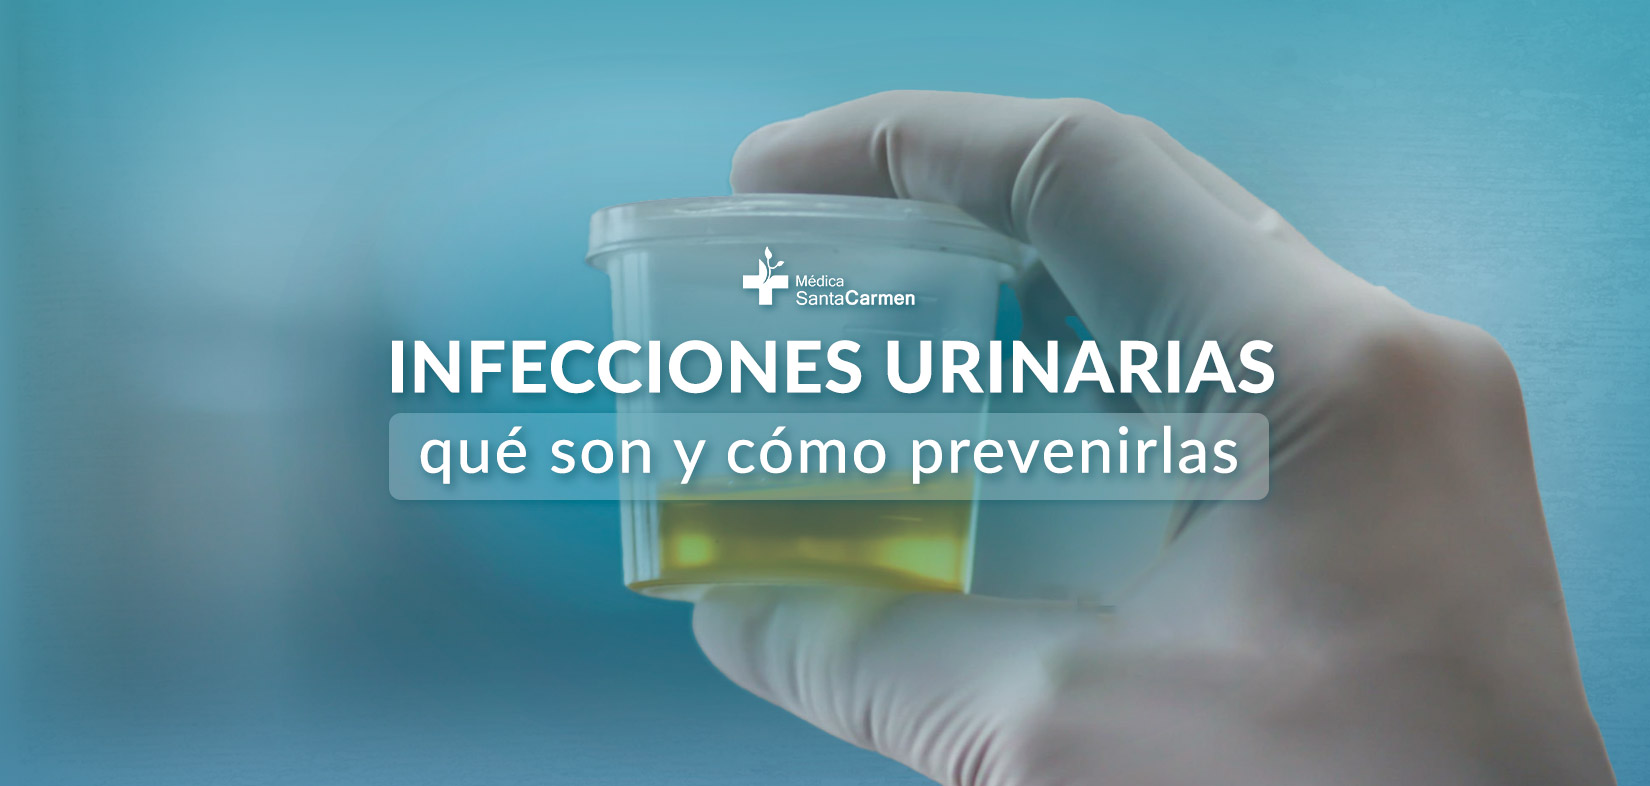 ¿Qué son las infecciones urinarias y cómo prevenirlas?